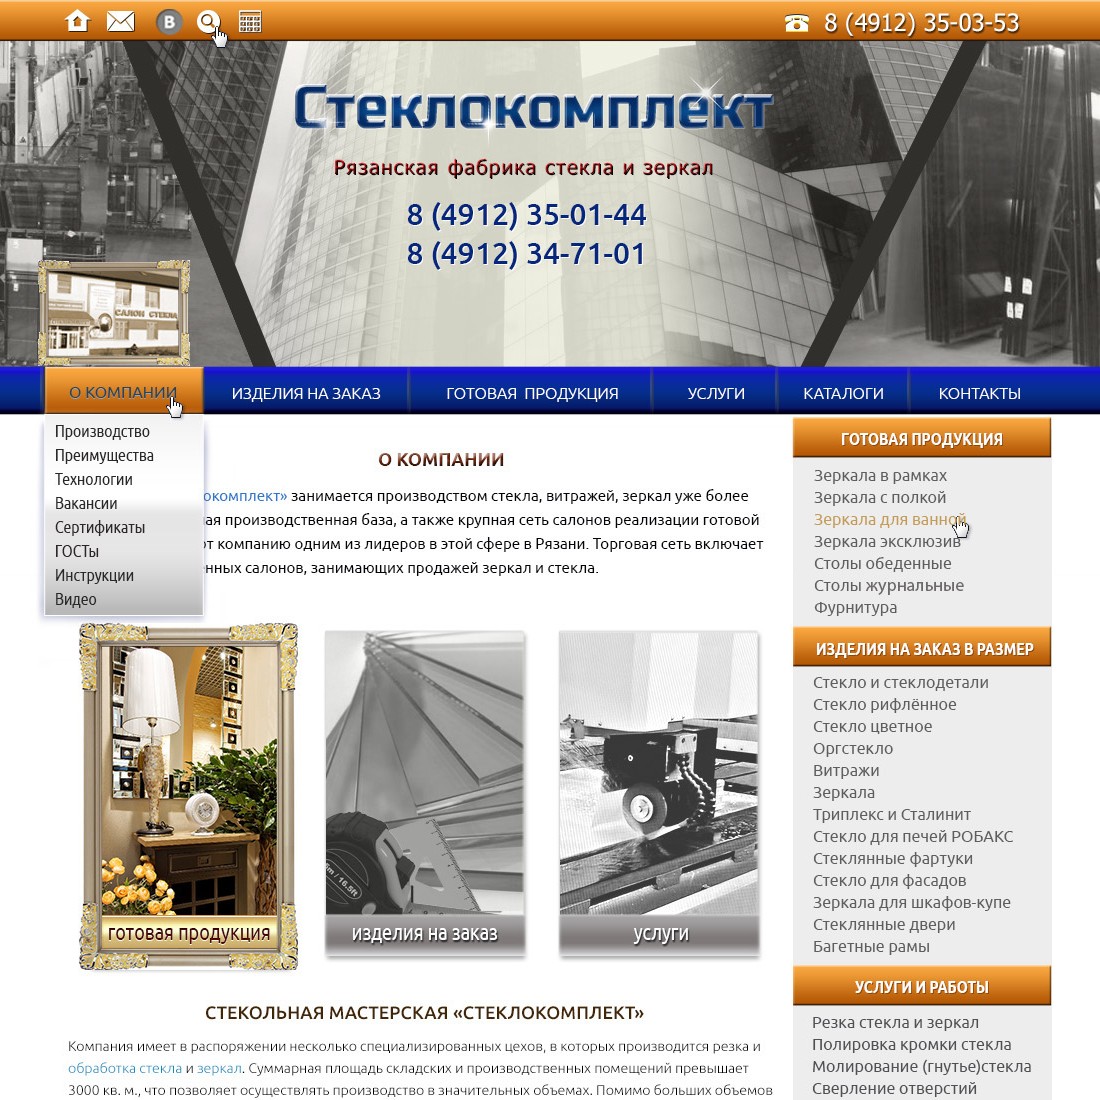 Сайт каталог для компании Стеклокомплект